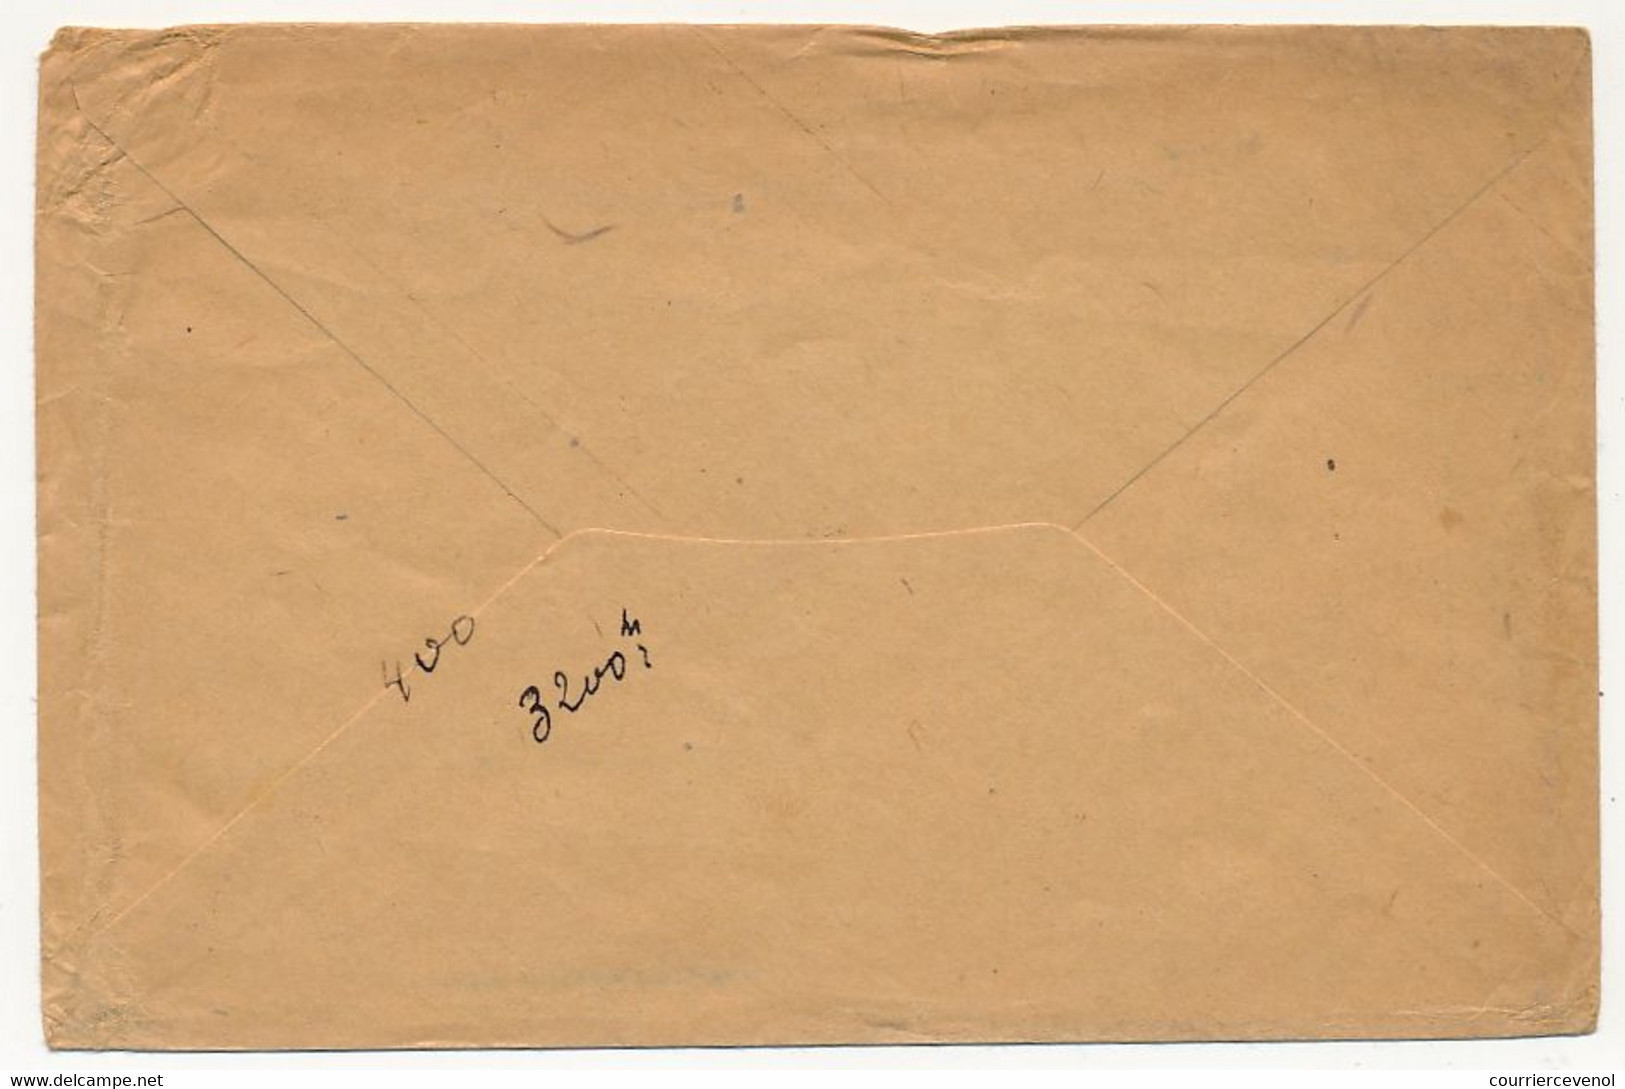 Enveloppe Prisonnier Français - Camp De Darmstadt - 14 Janvier 1916 - Censure (peu Lisible) - Guerre De 1914-18